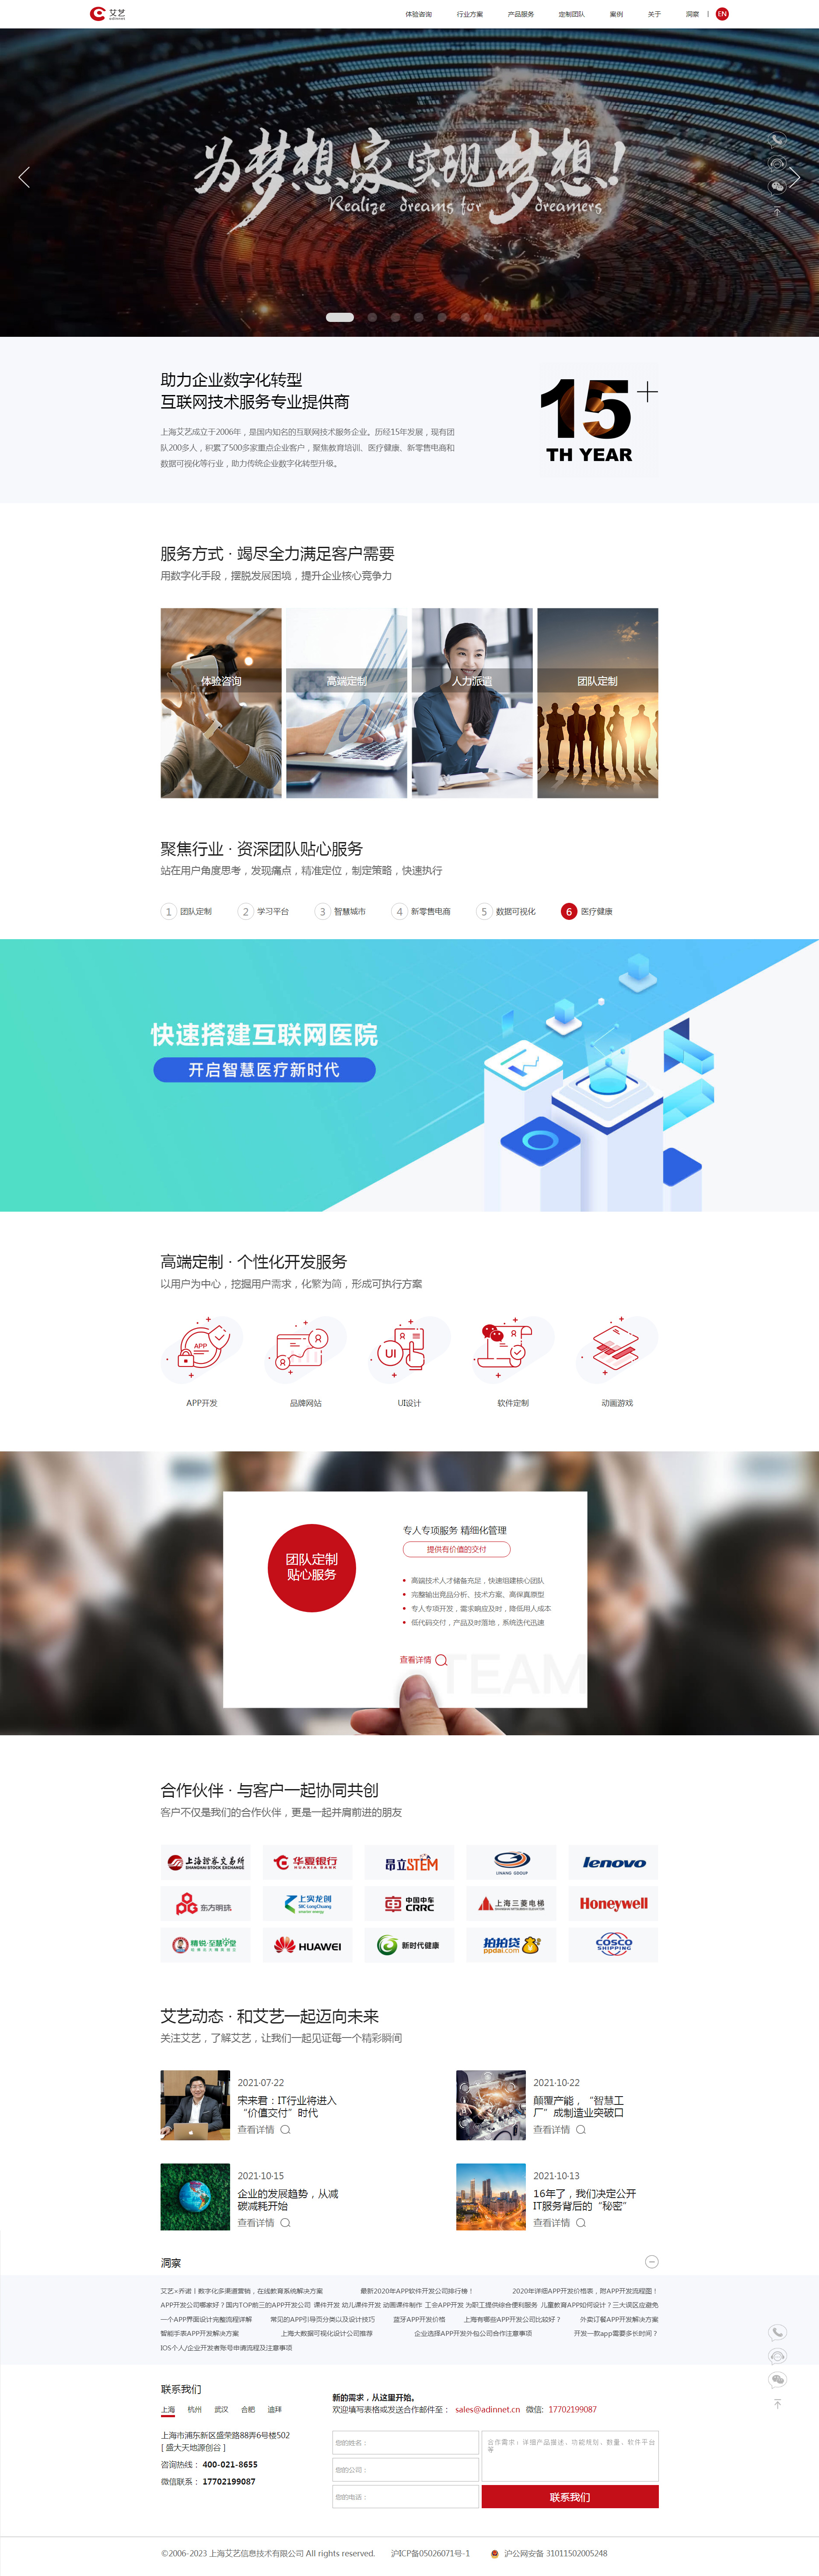 上海艾艺信息技术网站制作首页设计效果图